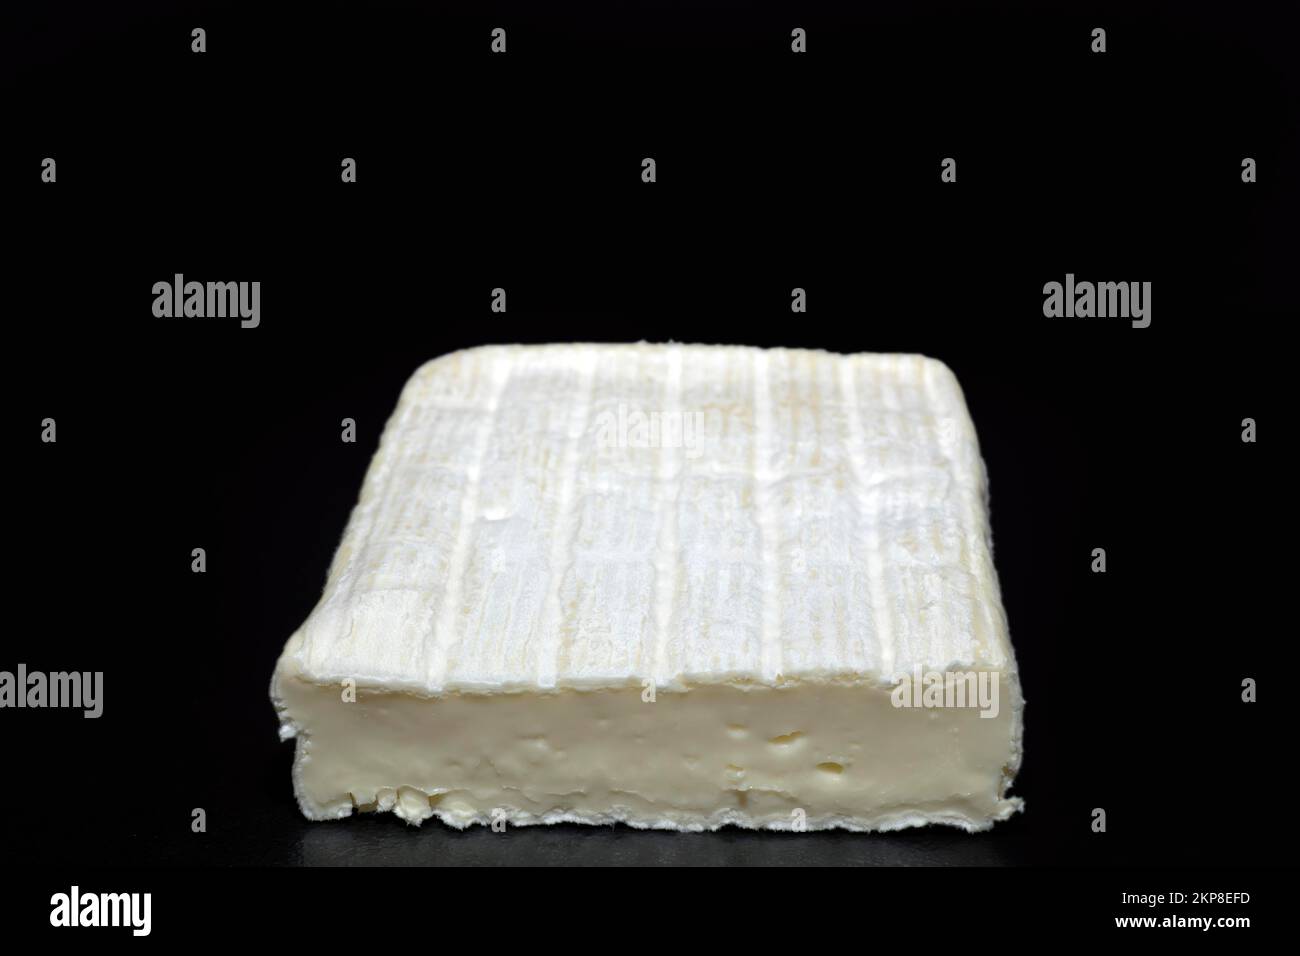 La Ficelle, formaggio francese a pasta molle a base di latte vaccino, regione della Loira, fotografia alimentare con sfondo nero Foto Stock